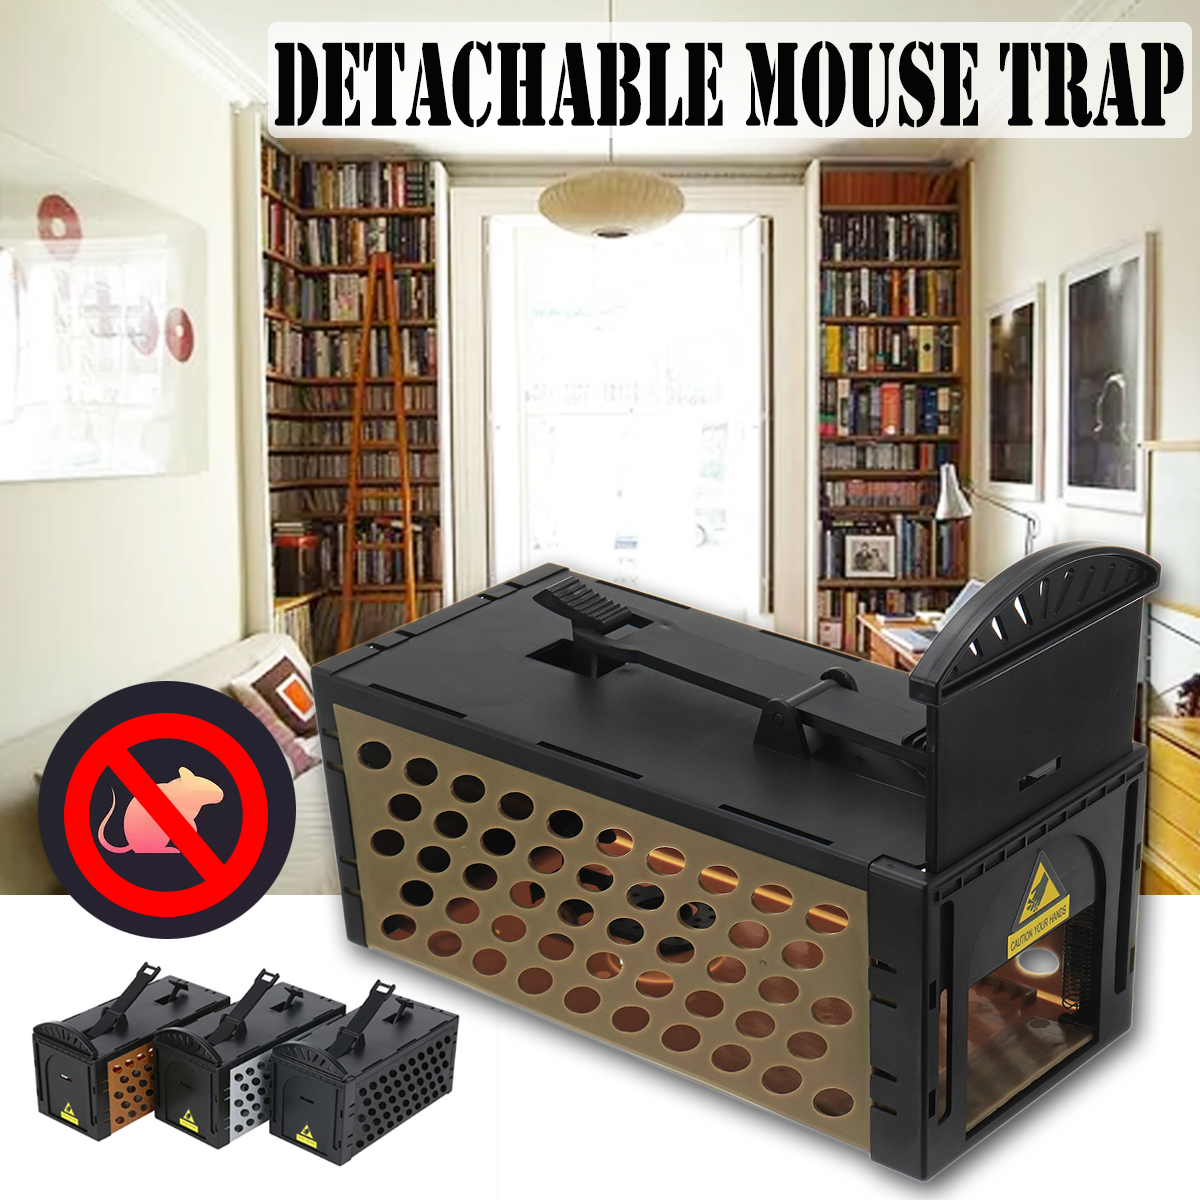 Detachable-Mousetrap-Live-Rodent-Trap-Rat-Mice-Rodent-Zapper-Repel-Rat-Killer-Mouse-Trap-1404885